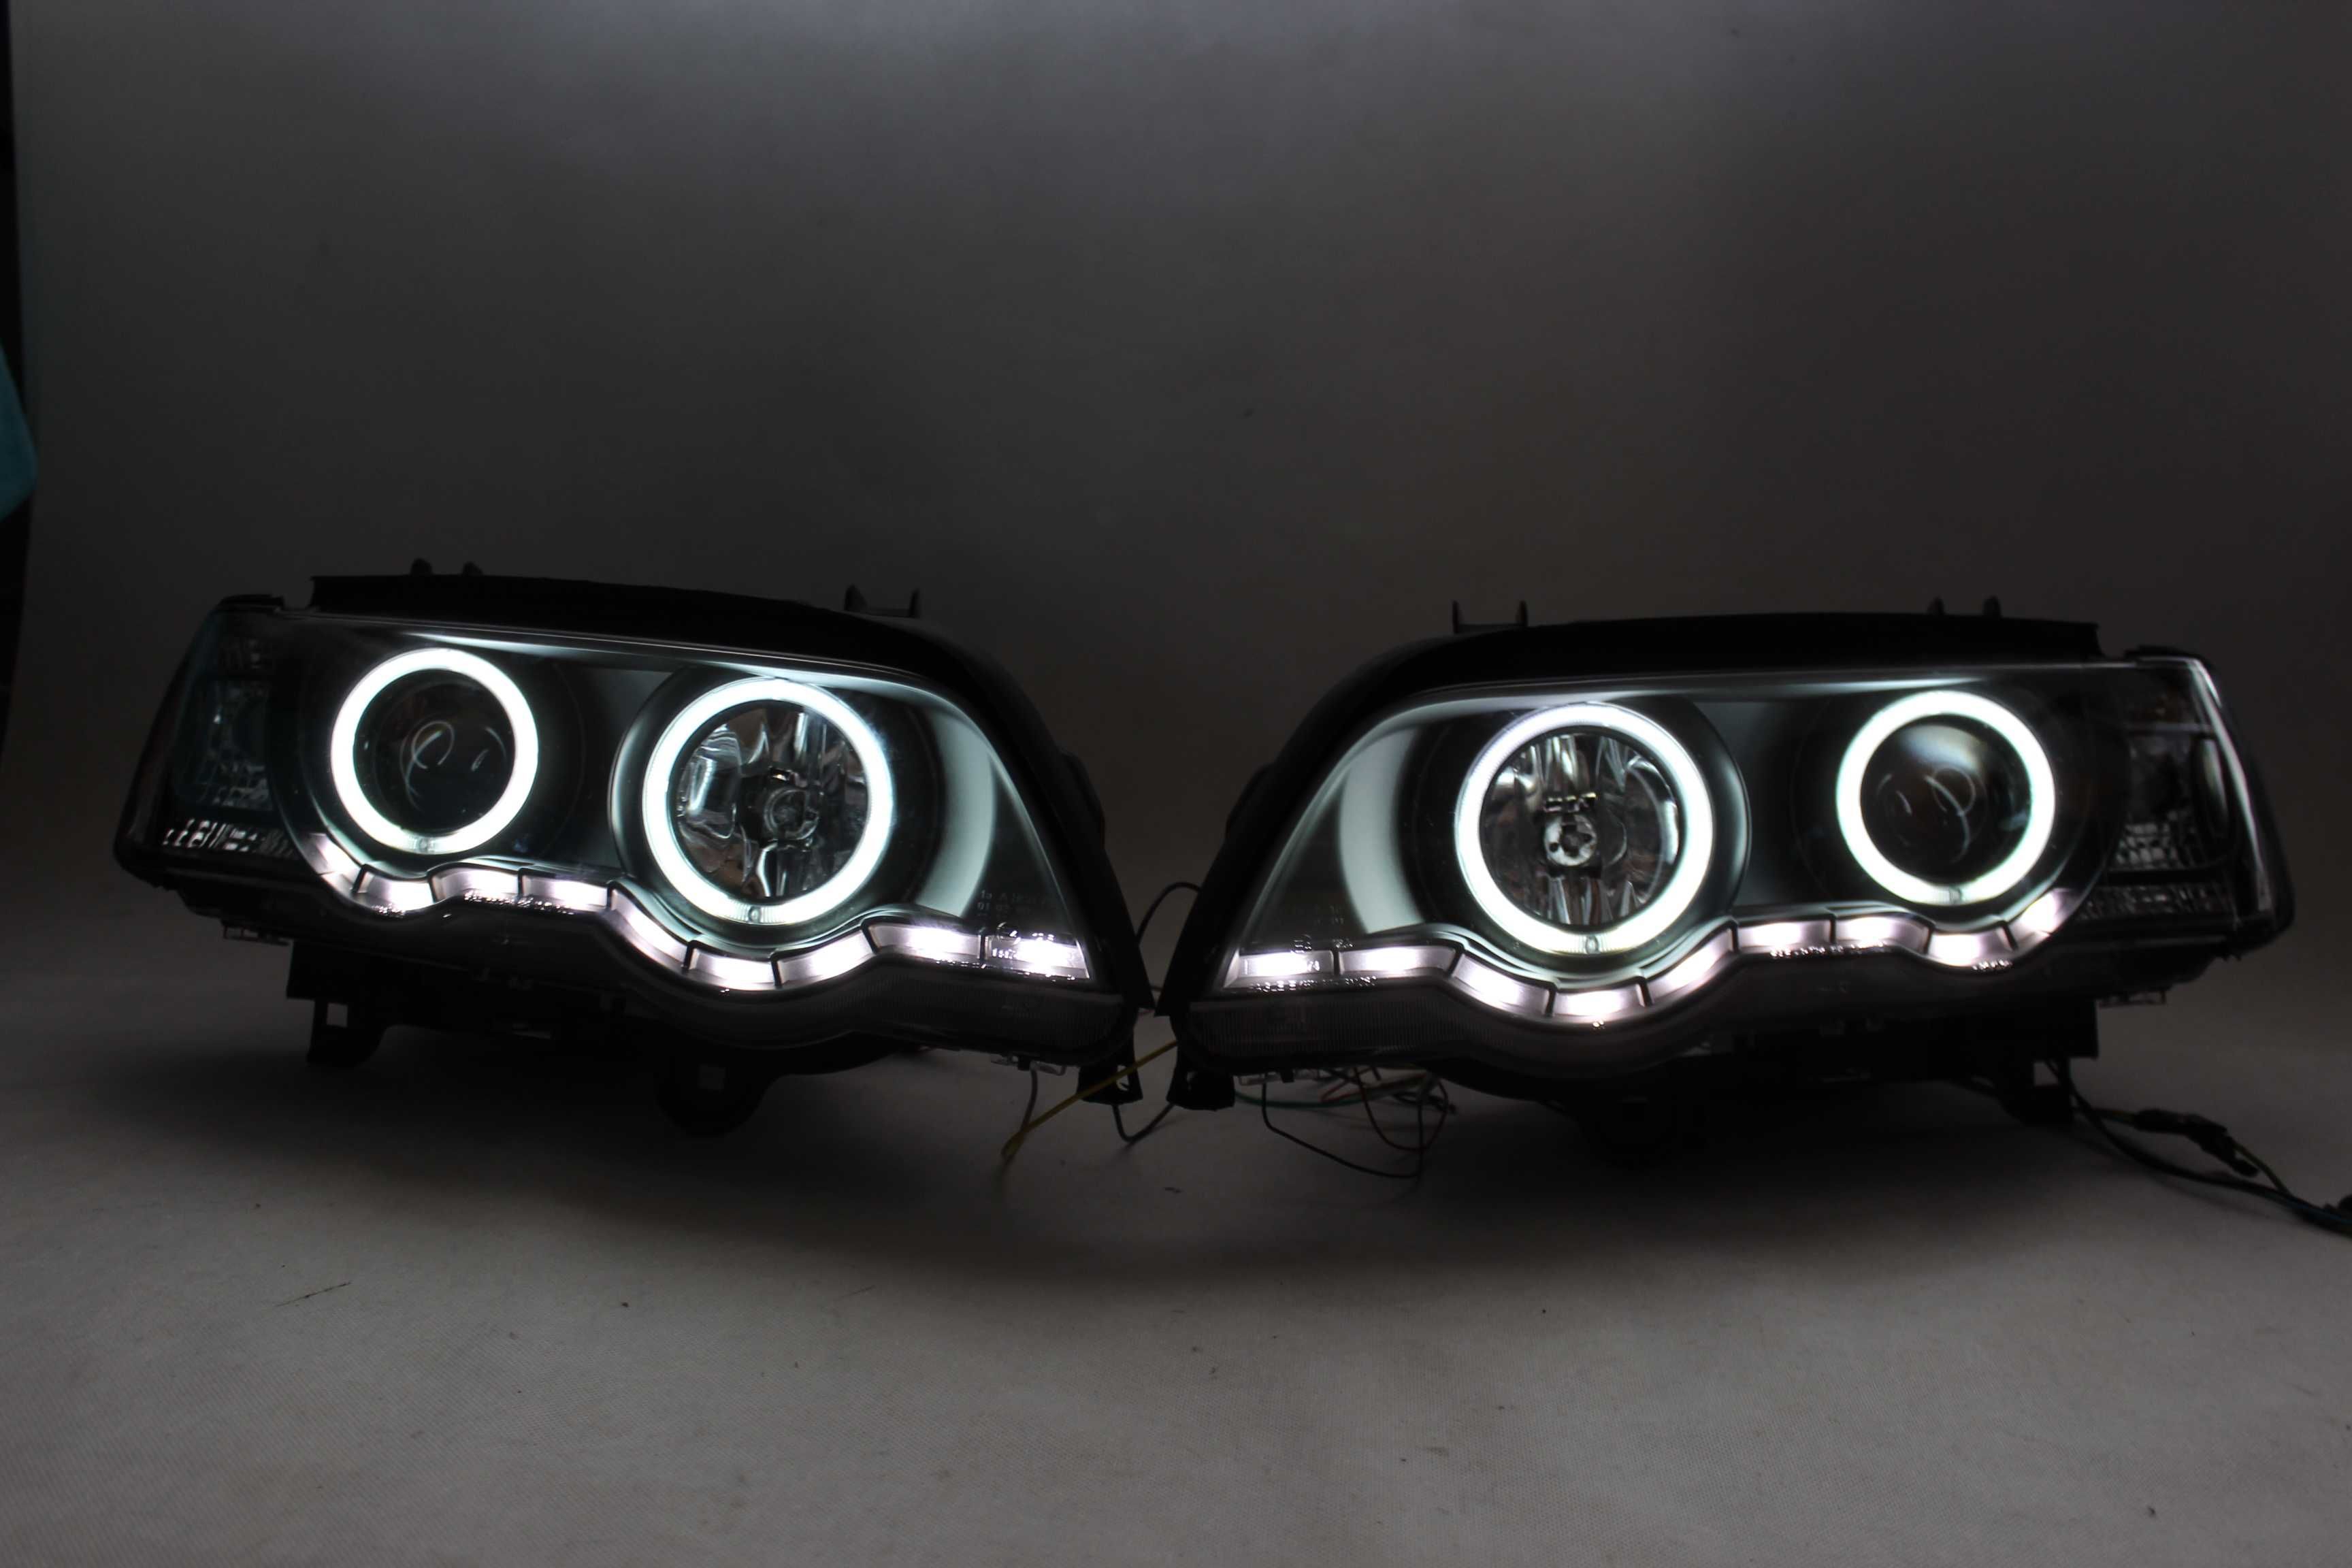 Lampy reflektory przednie przód BMW X5 E53 99-03 XENON LED Ringi IGŁA!